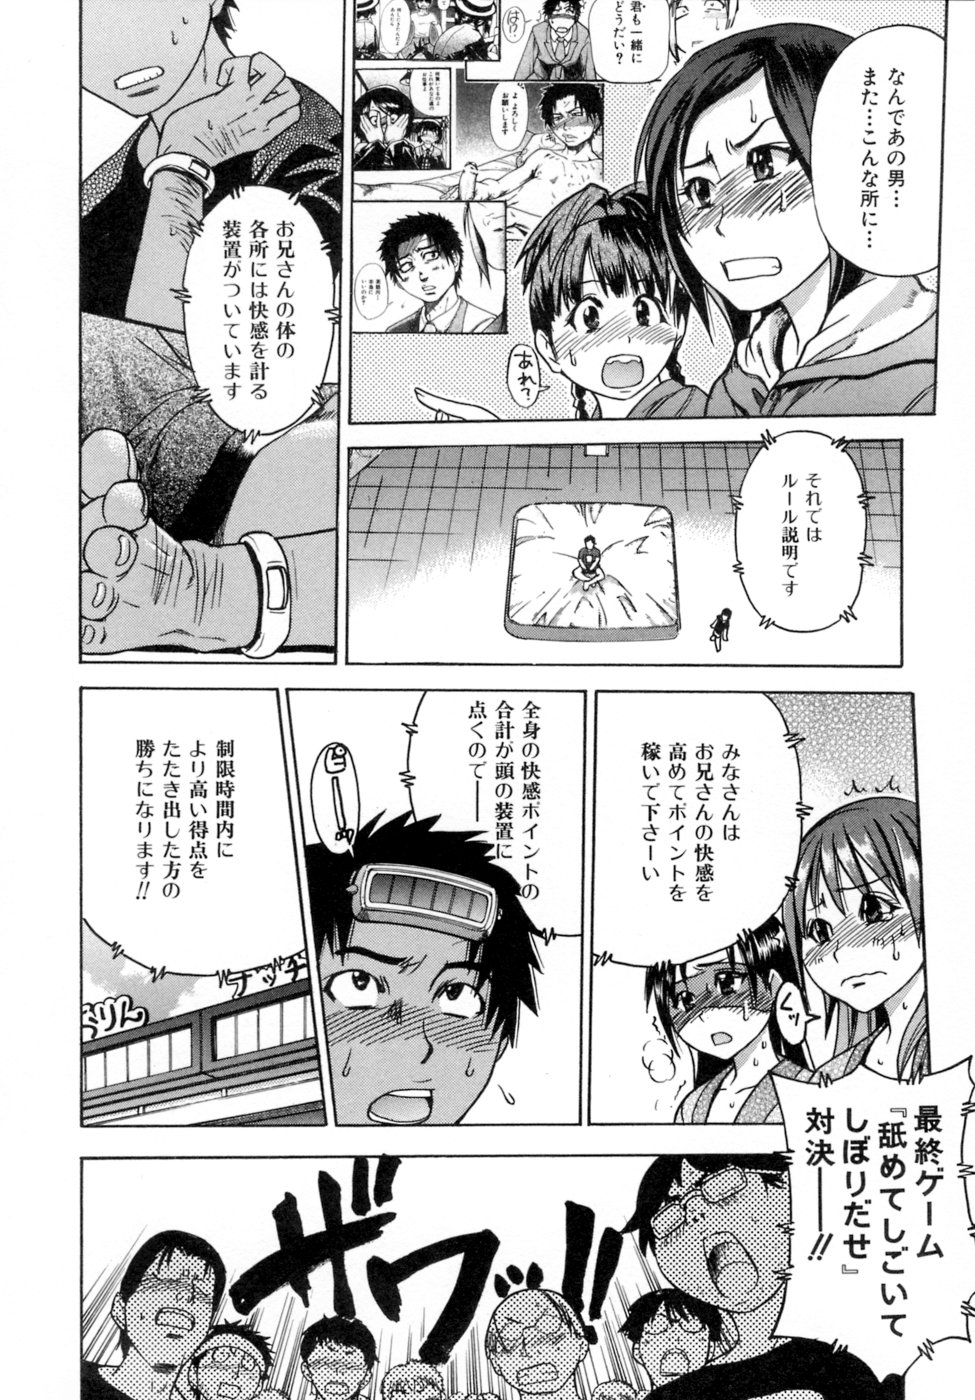 [Shiwasu no Okina] Shining Musume. 5. Five Sense of Love page 33 full